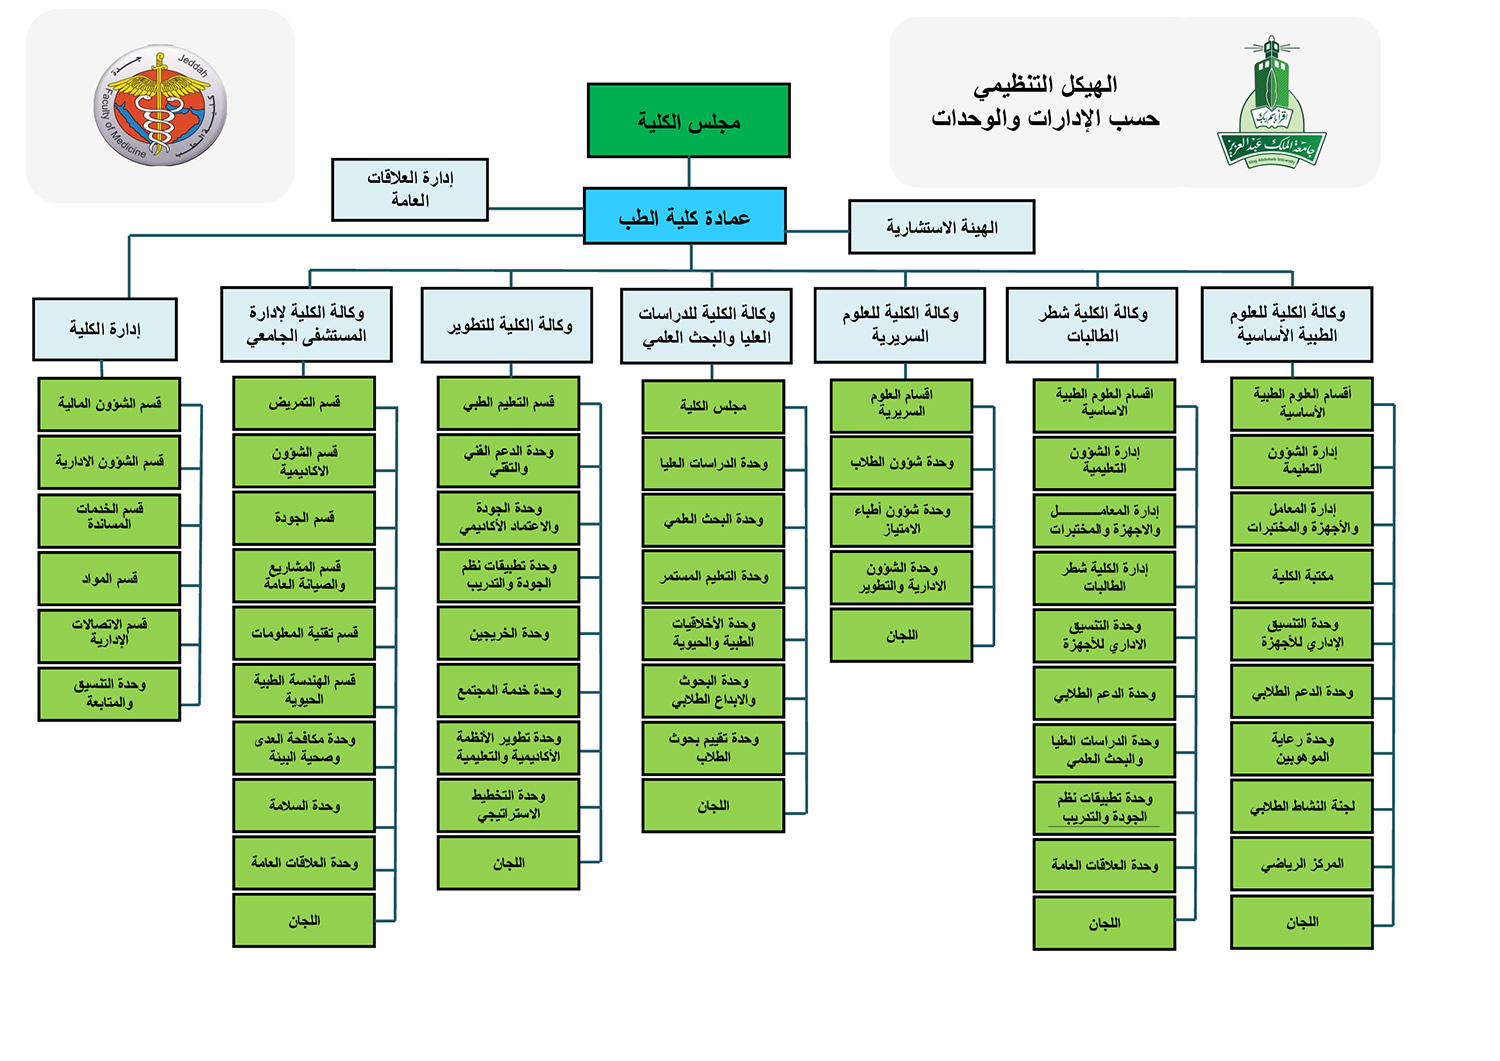 اقسام جامعه الملك سعود بنات